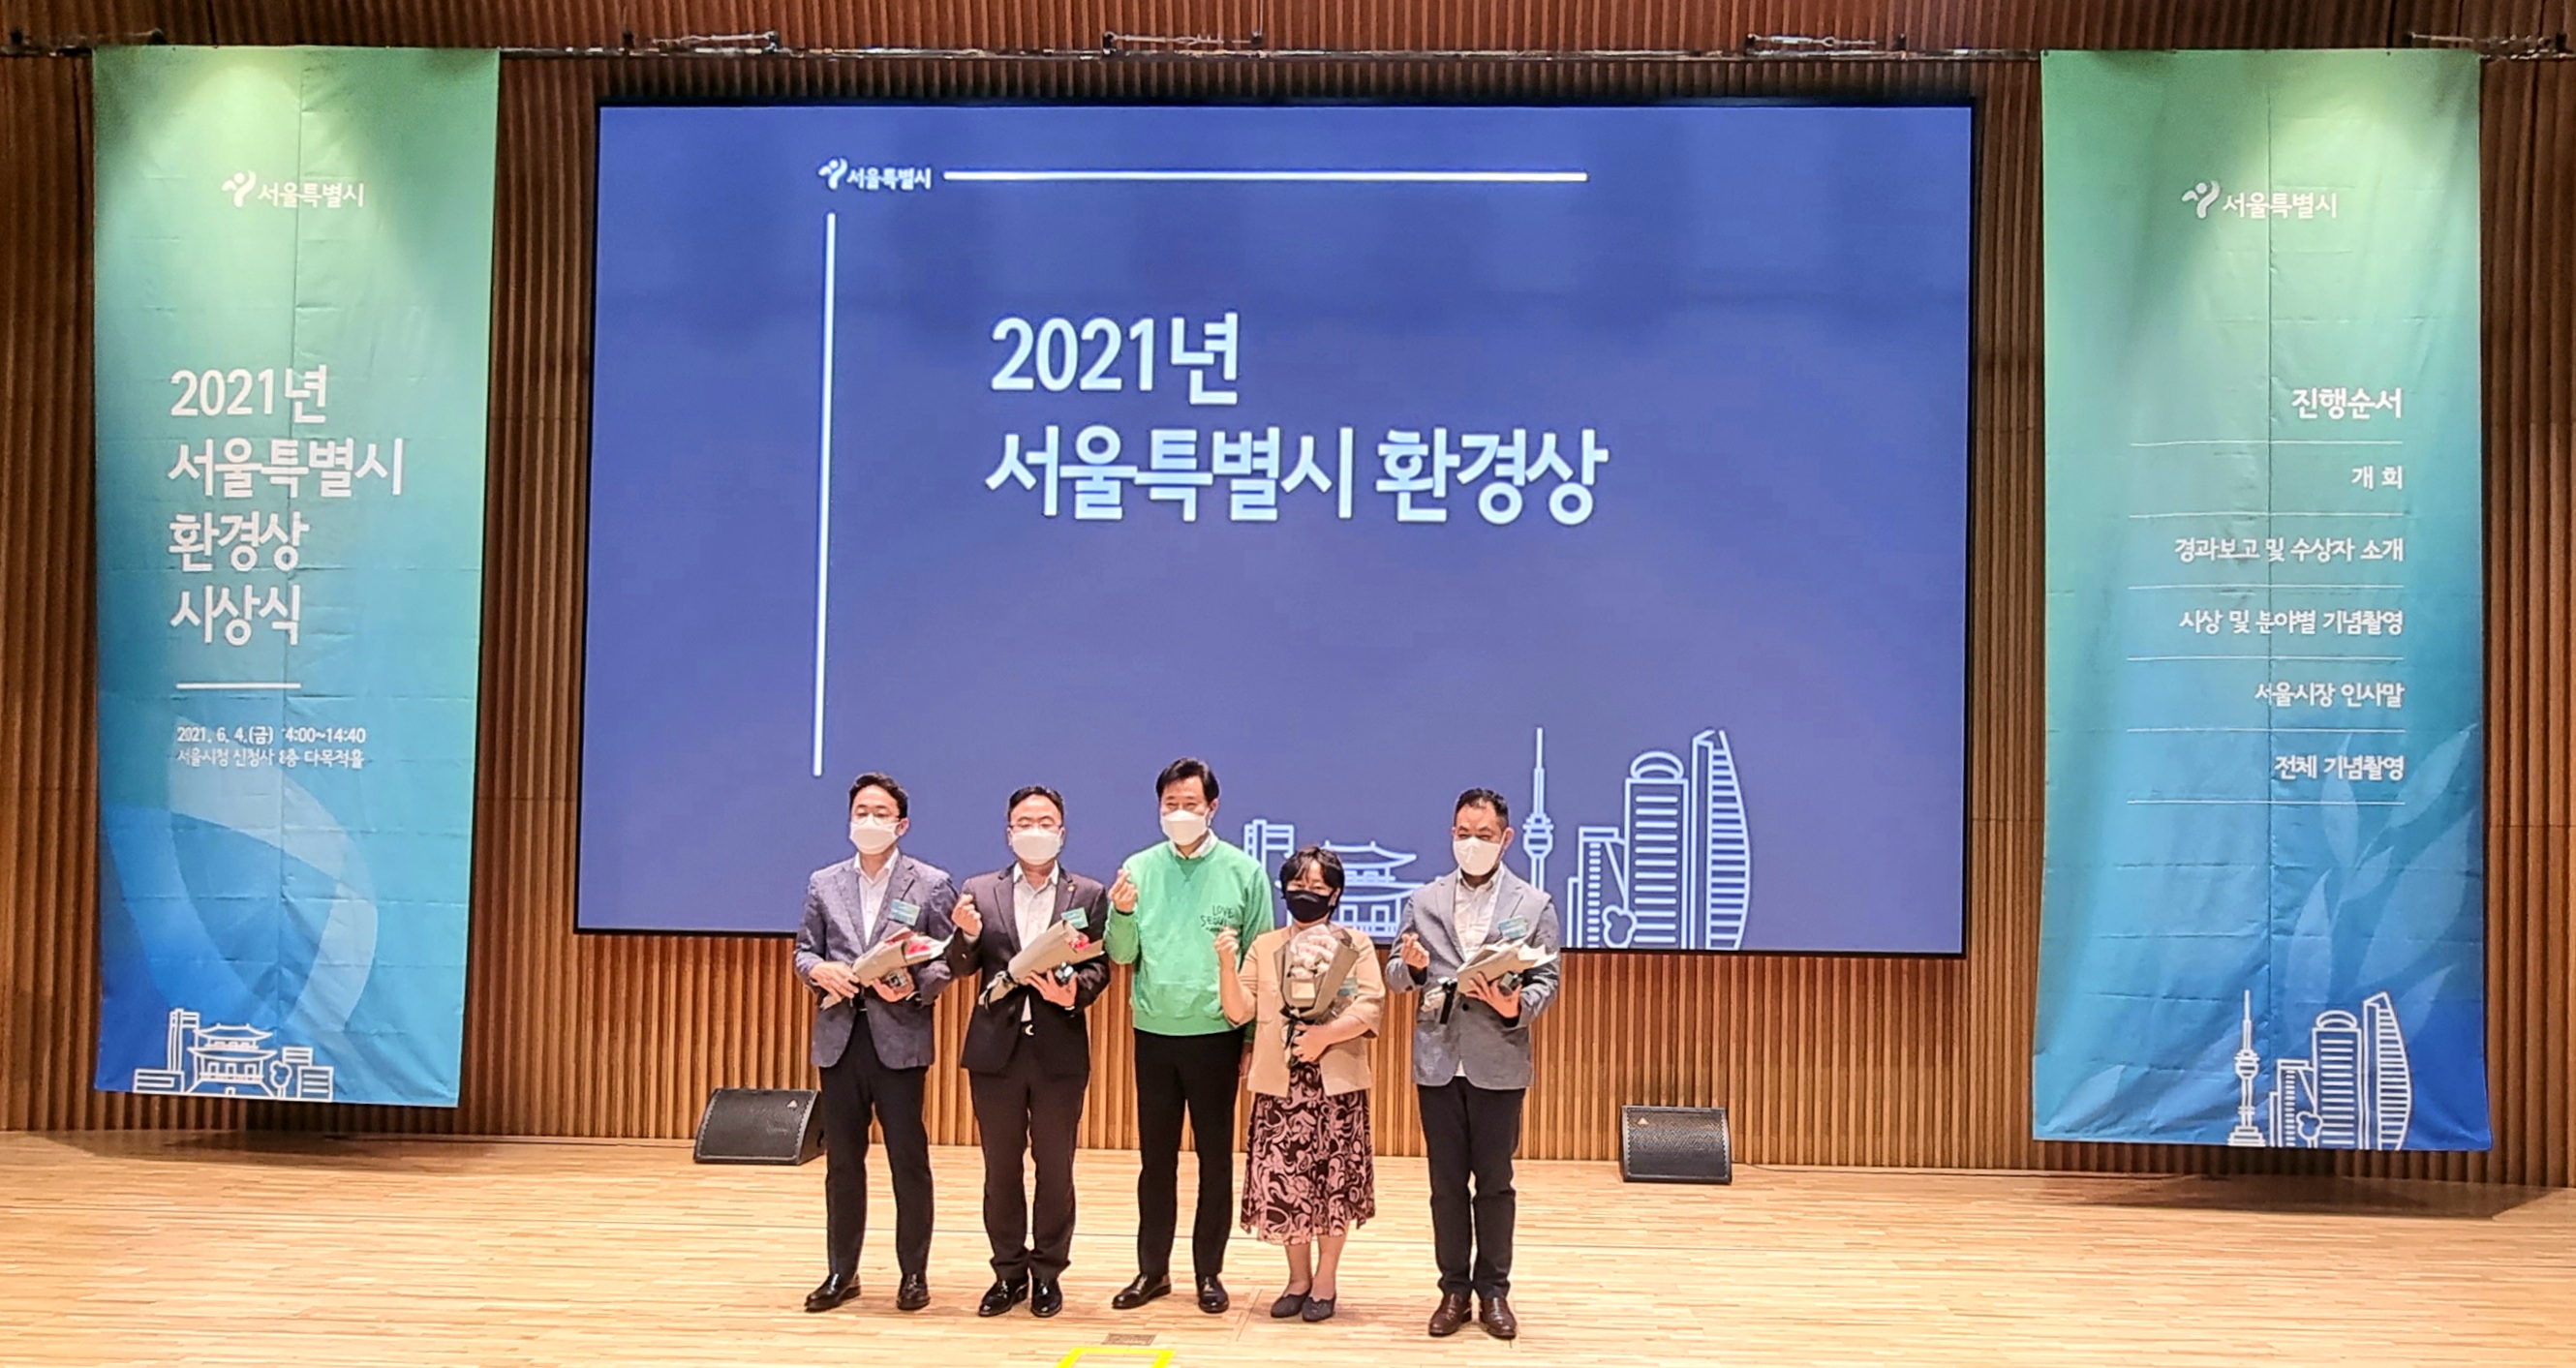 2021 서울시 환경상 수상.jpg